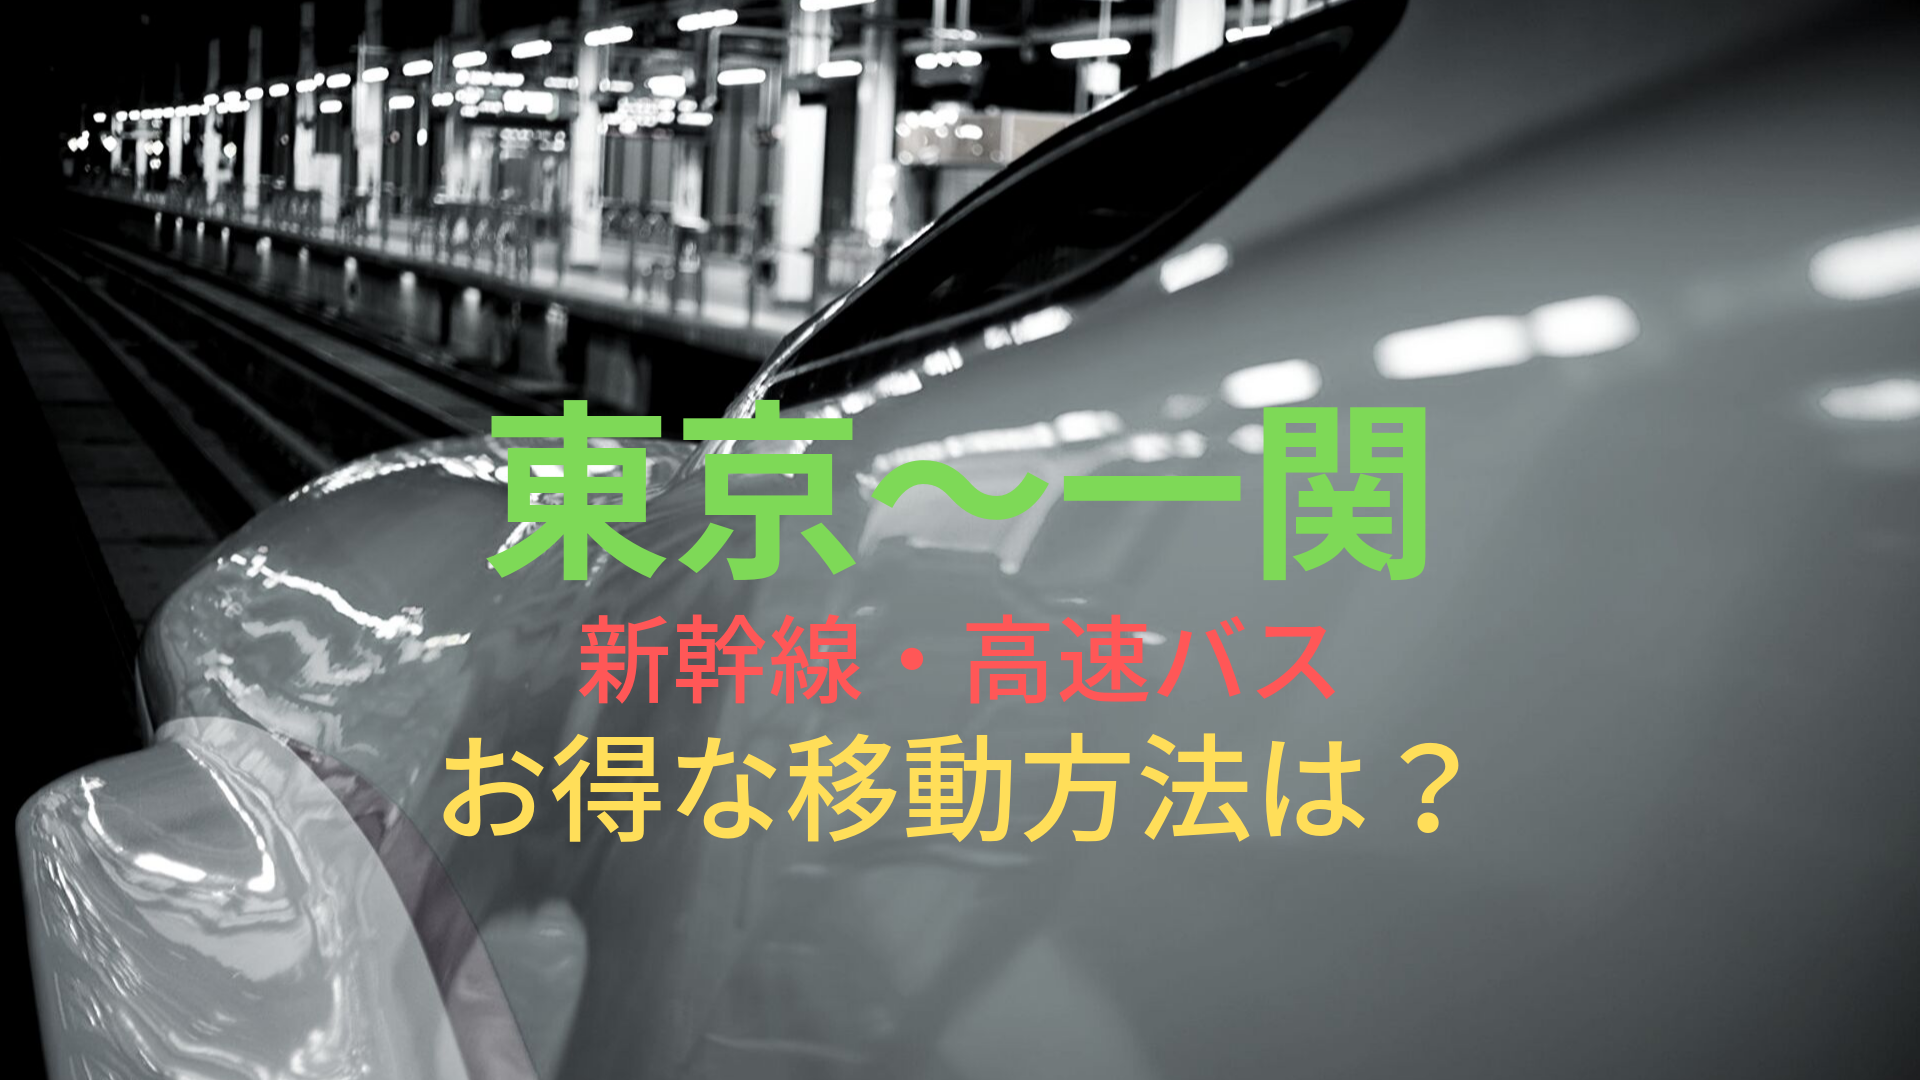 東京 一関 4000円 格安で移動する方法は 新幹線 高速バスをそれぞれ比較 ばしたく交通